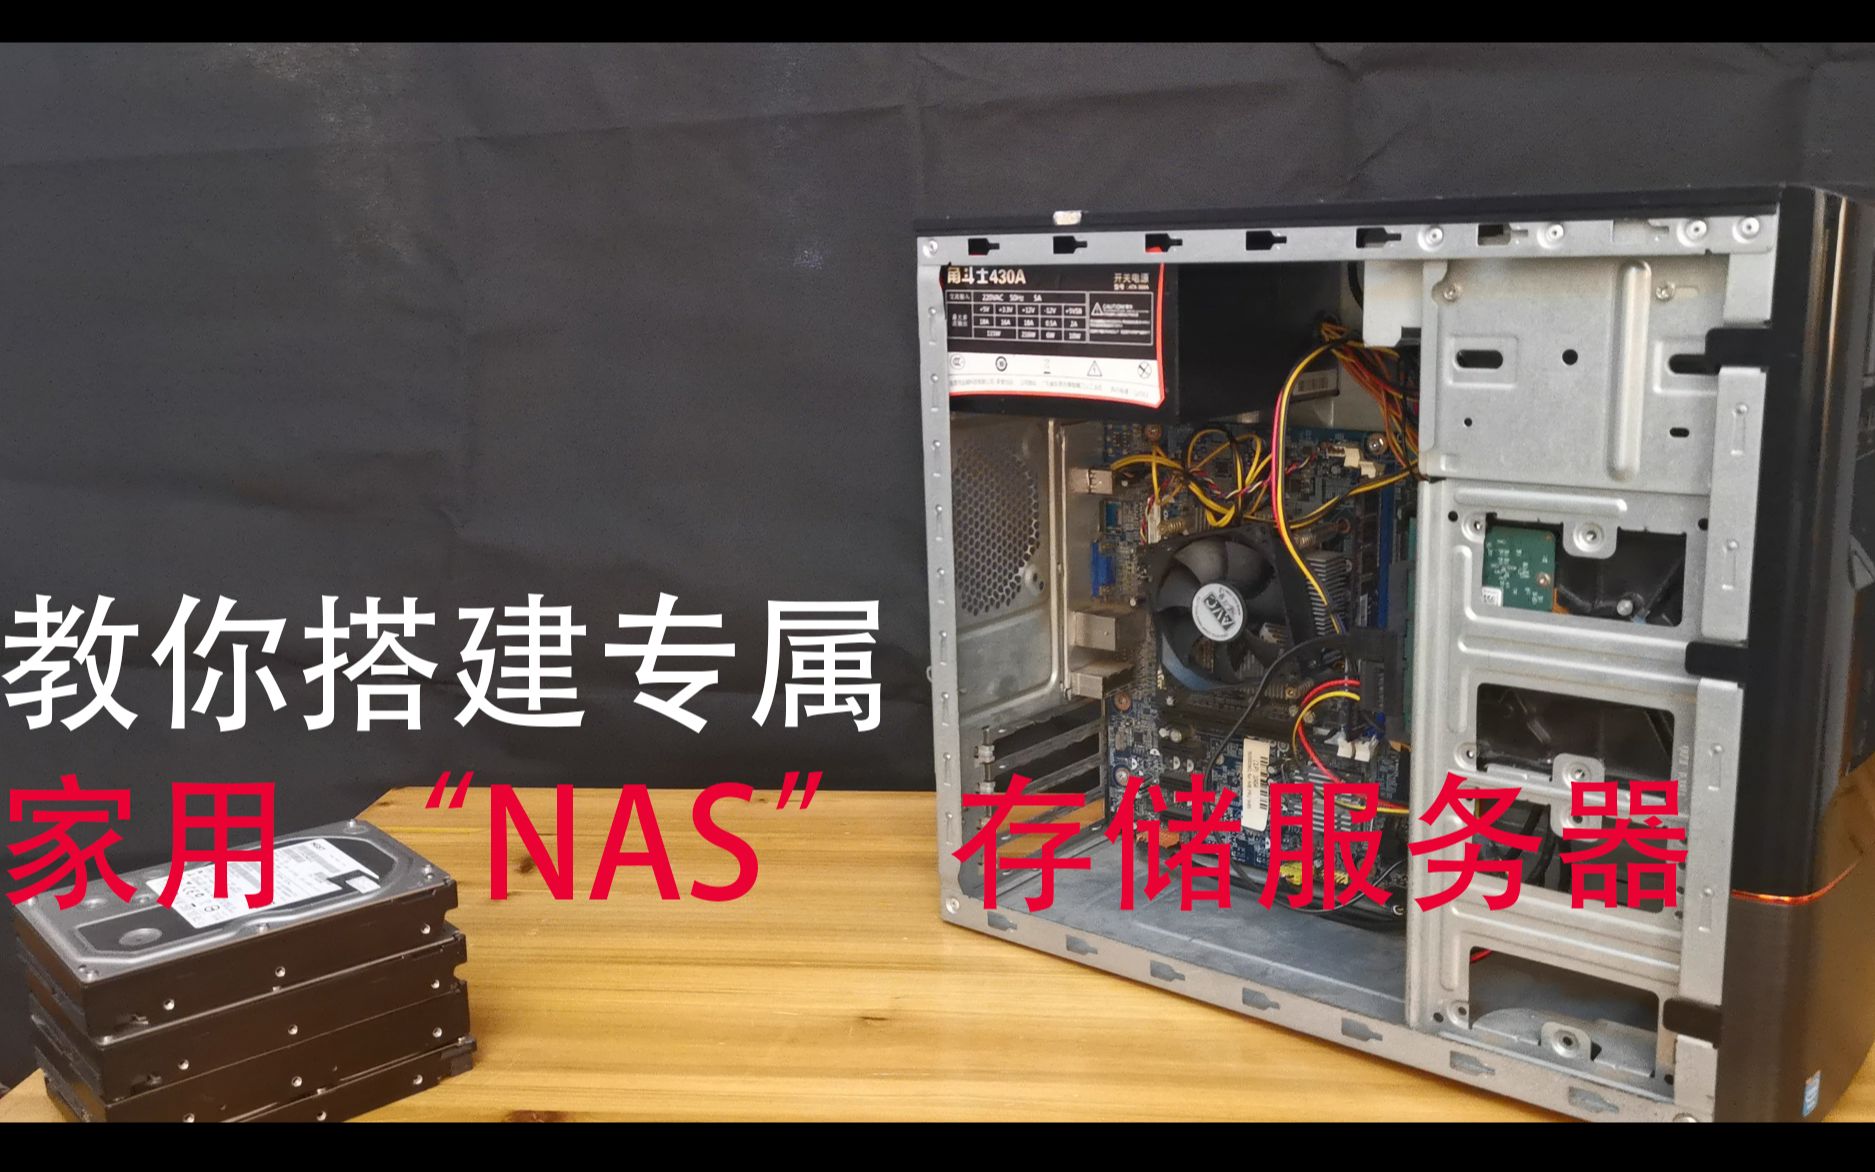 怎样简单搭建 NAS 存储服务器？